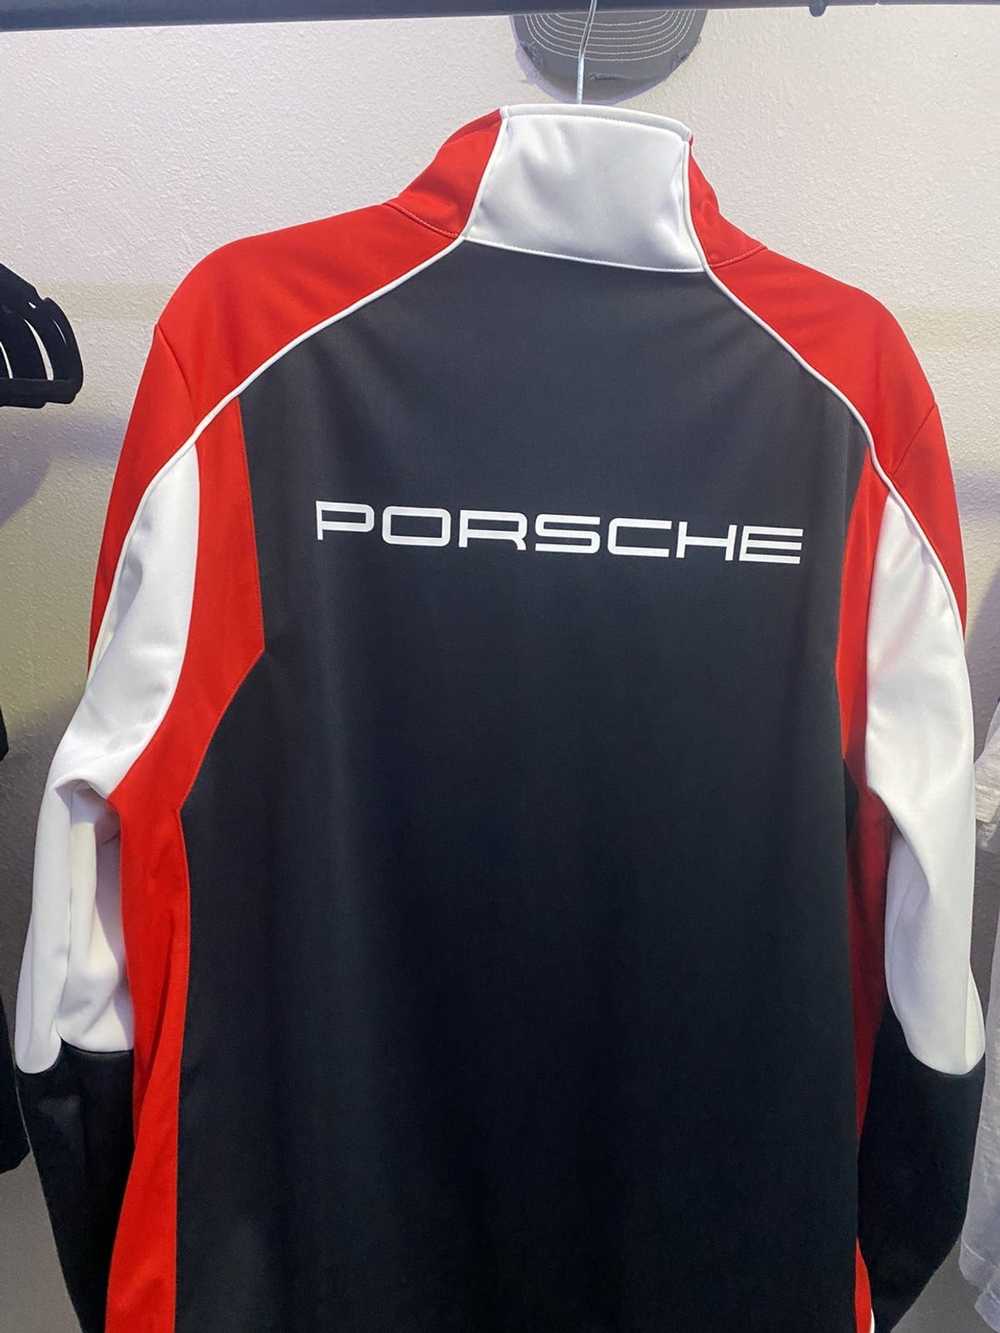 Porsche Design Porsche Motorsport Collection - image 2